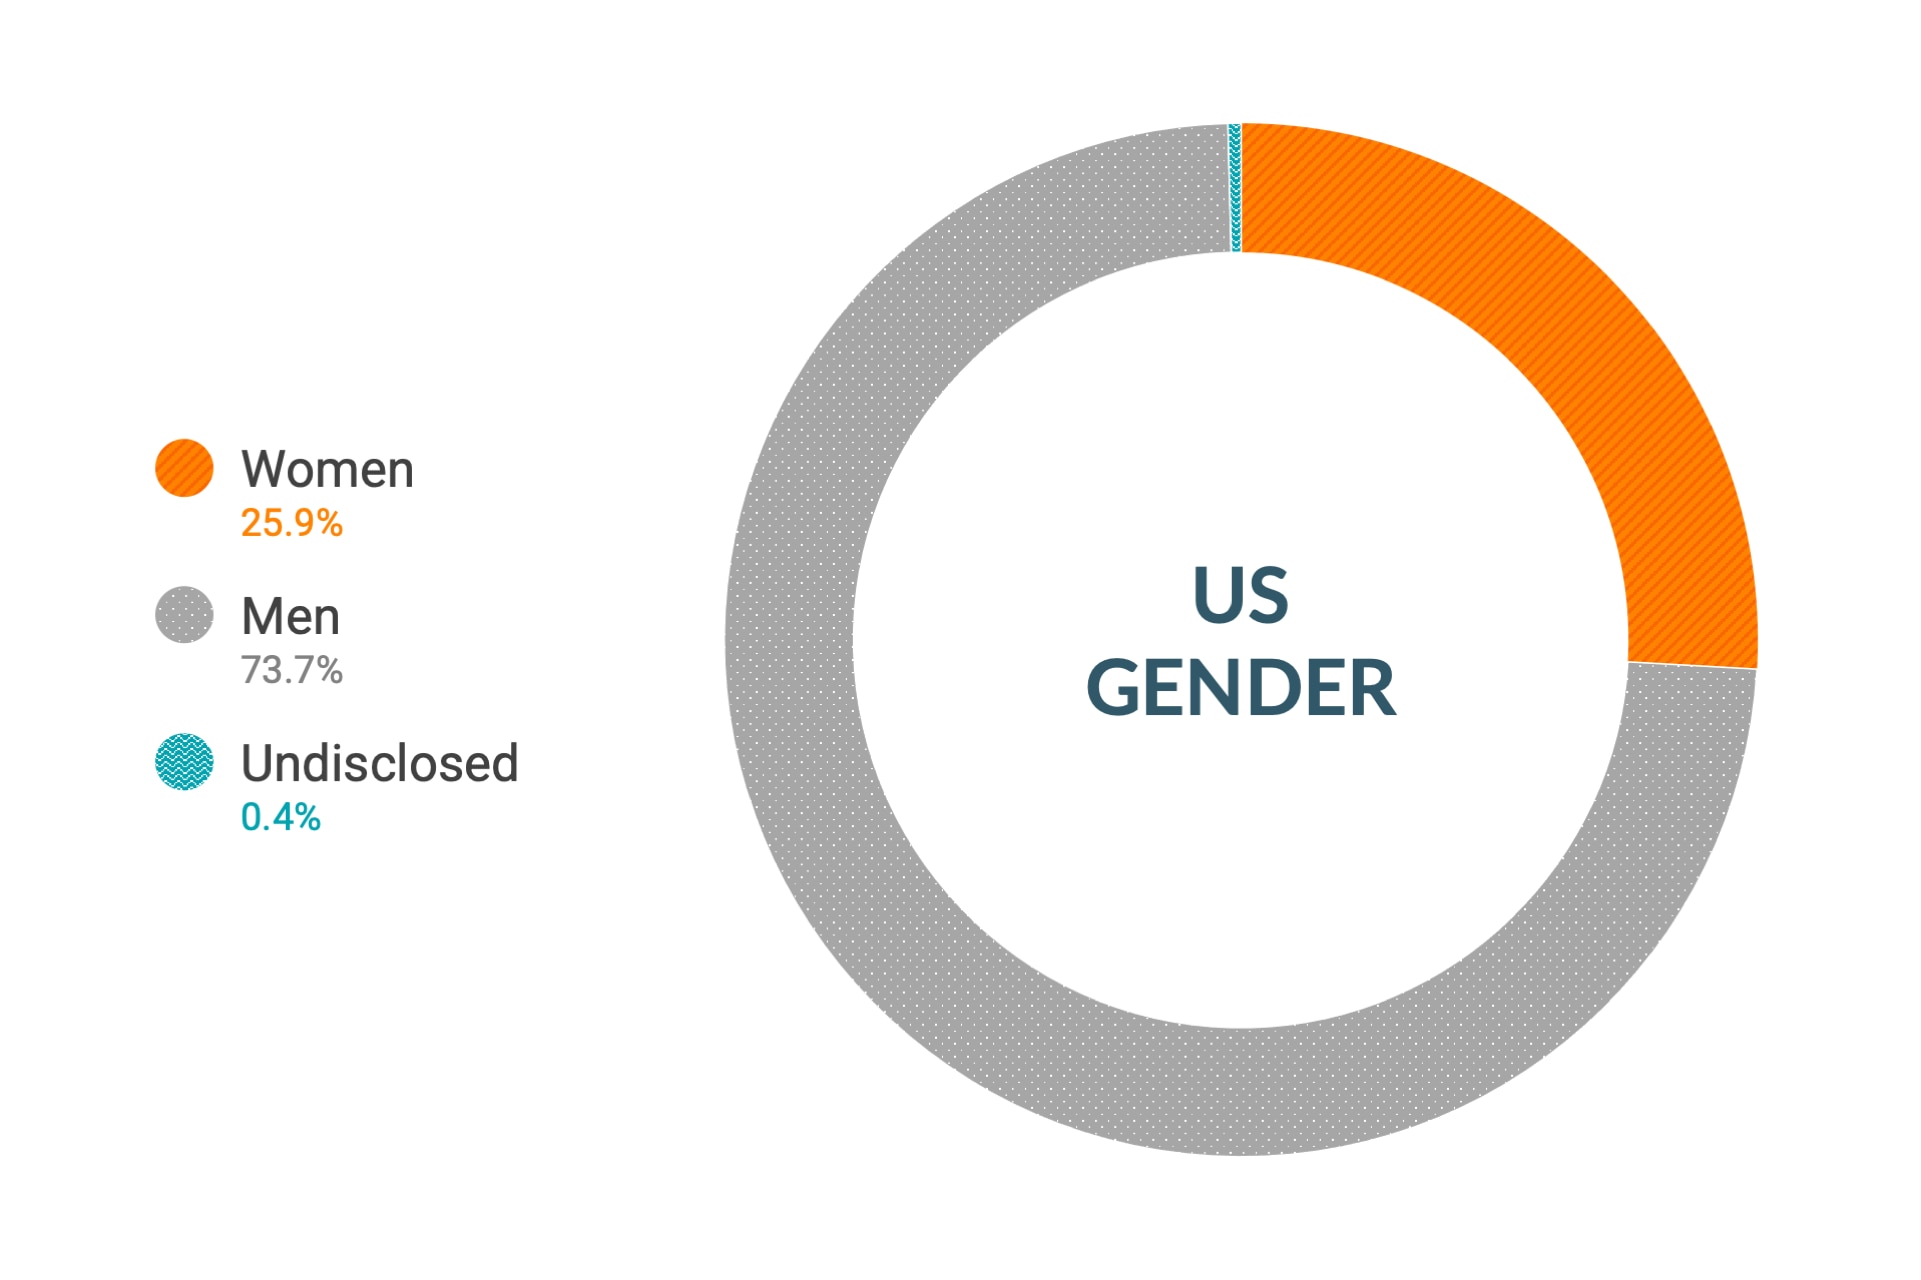 Dane firmy Cloudera dotyczące różnorodności i inkluzywności w kontekście płci w Stanach Zjednoczonych: kobiety 26,3%, mężczyźni 73,3%, nie ujawniono 0,4%